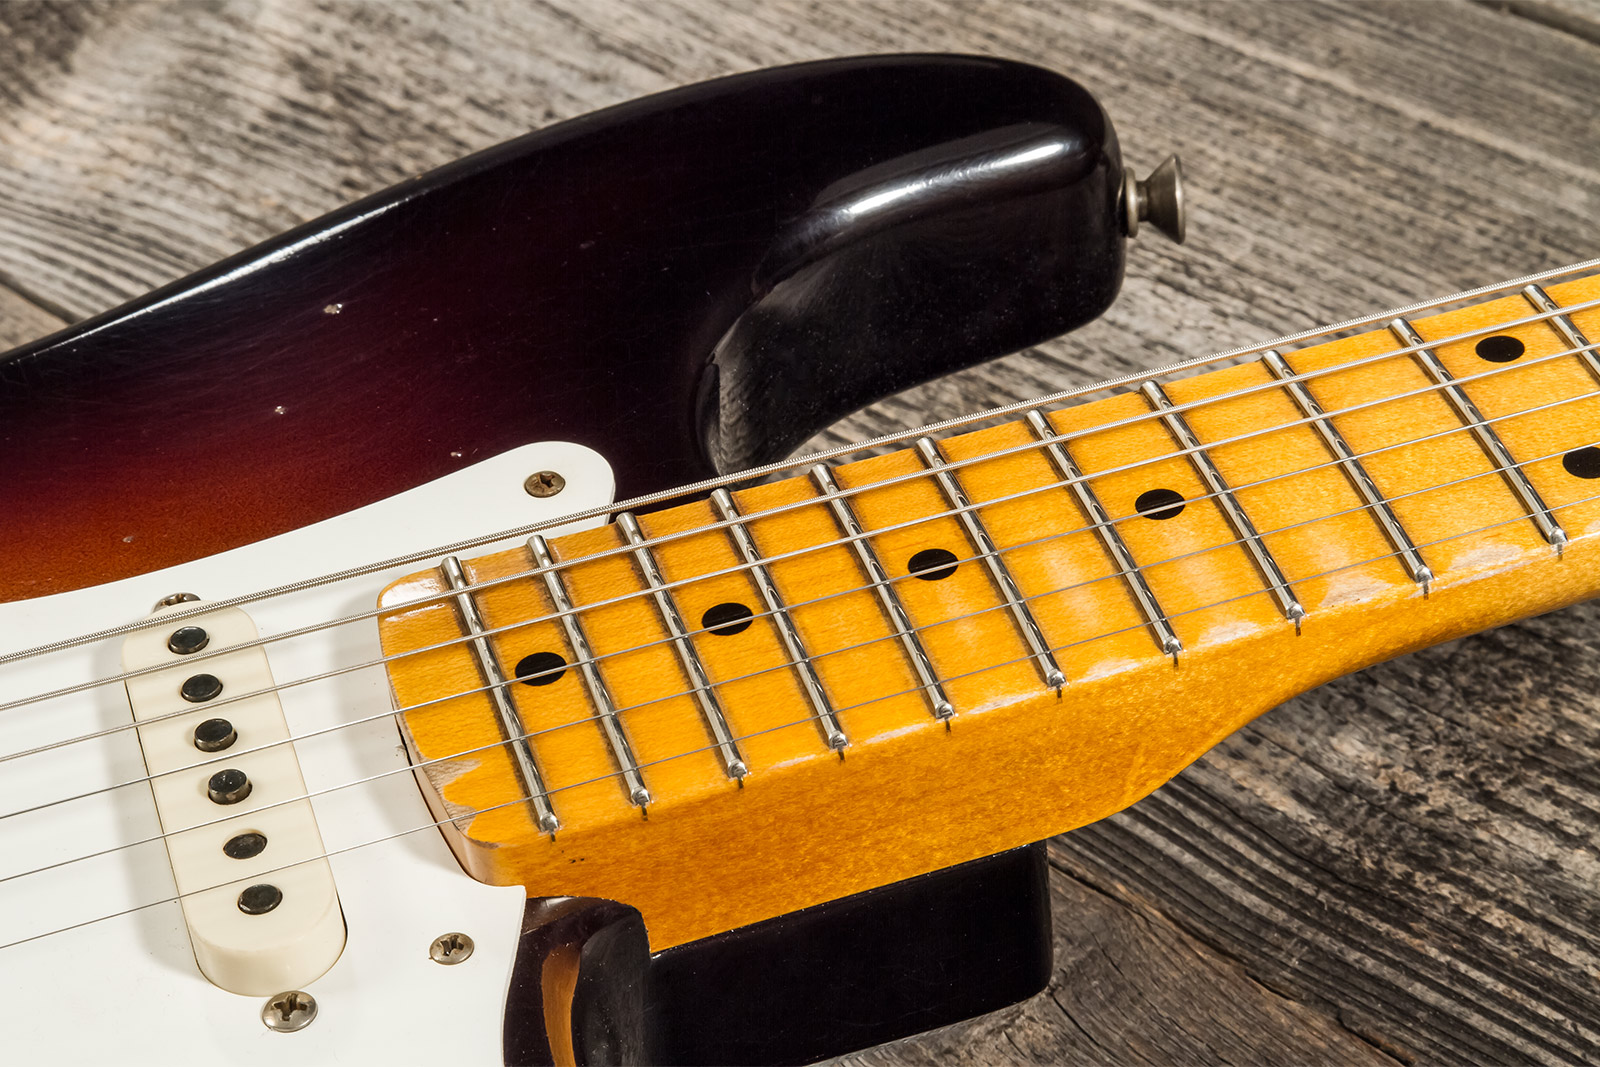 Fender Custom Shop Strat 1957 3s Trem Mn #cz571791 - Relic Wide Fade 2-color Sunburst - E-Gitarre in Str-Form - Variation 5